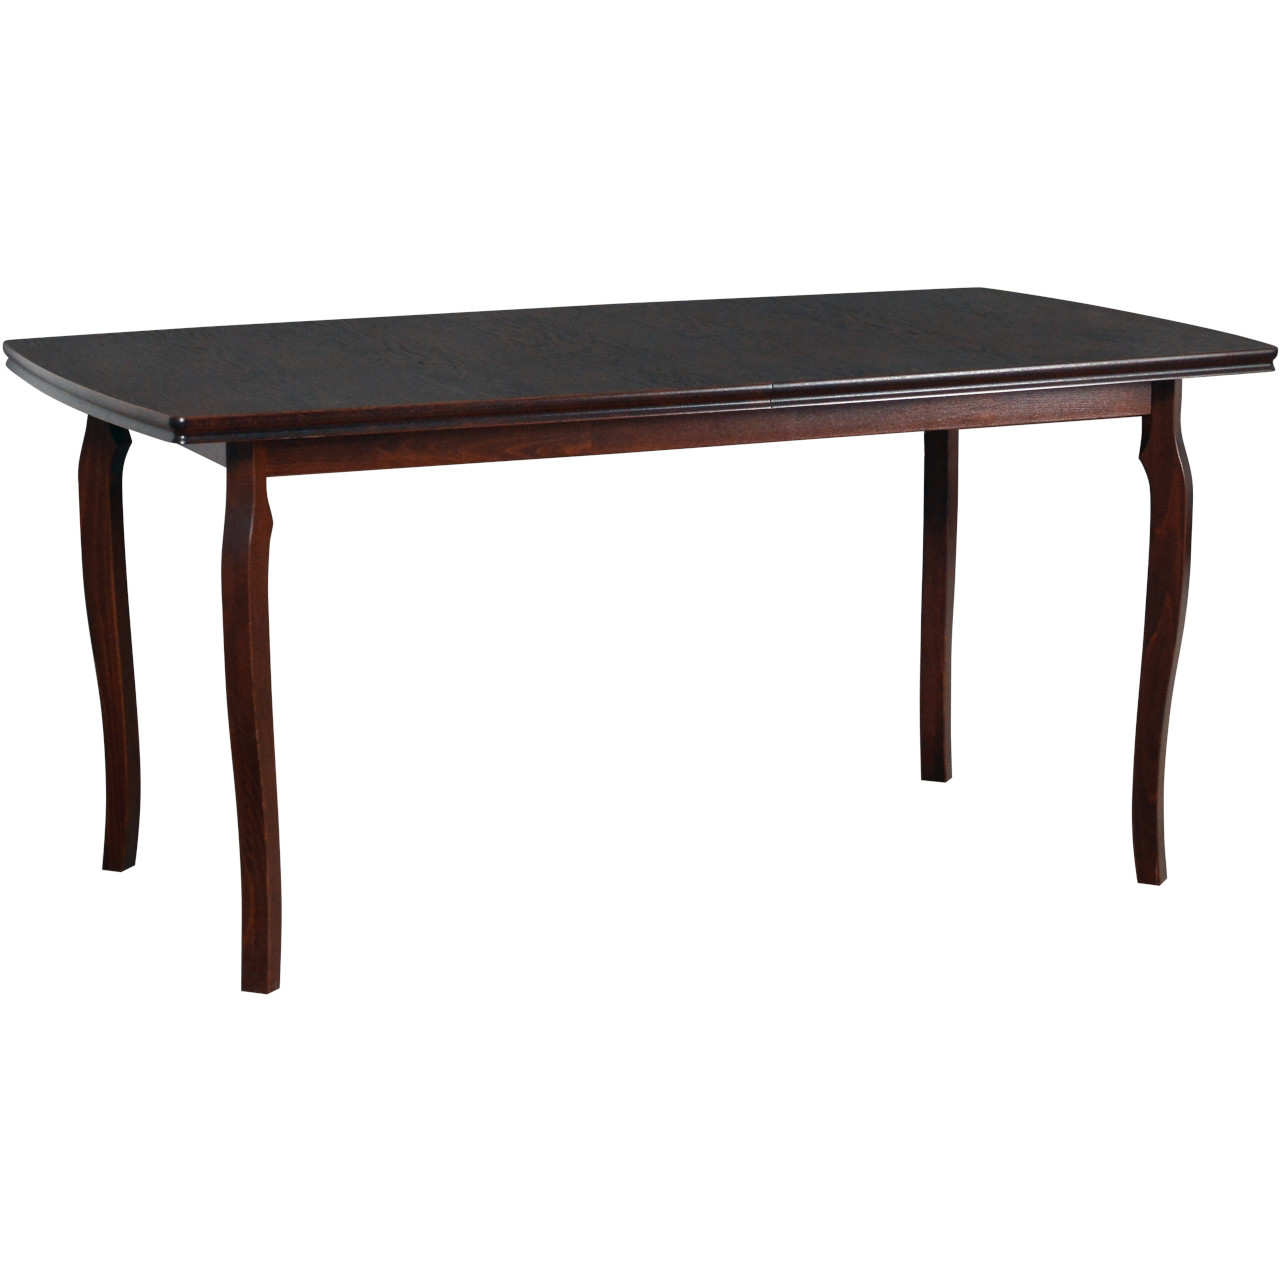 Table KENT 1 90x160/200 walnut oak veneer